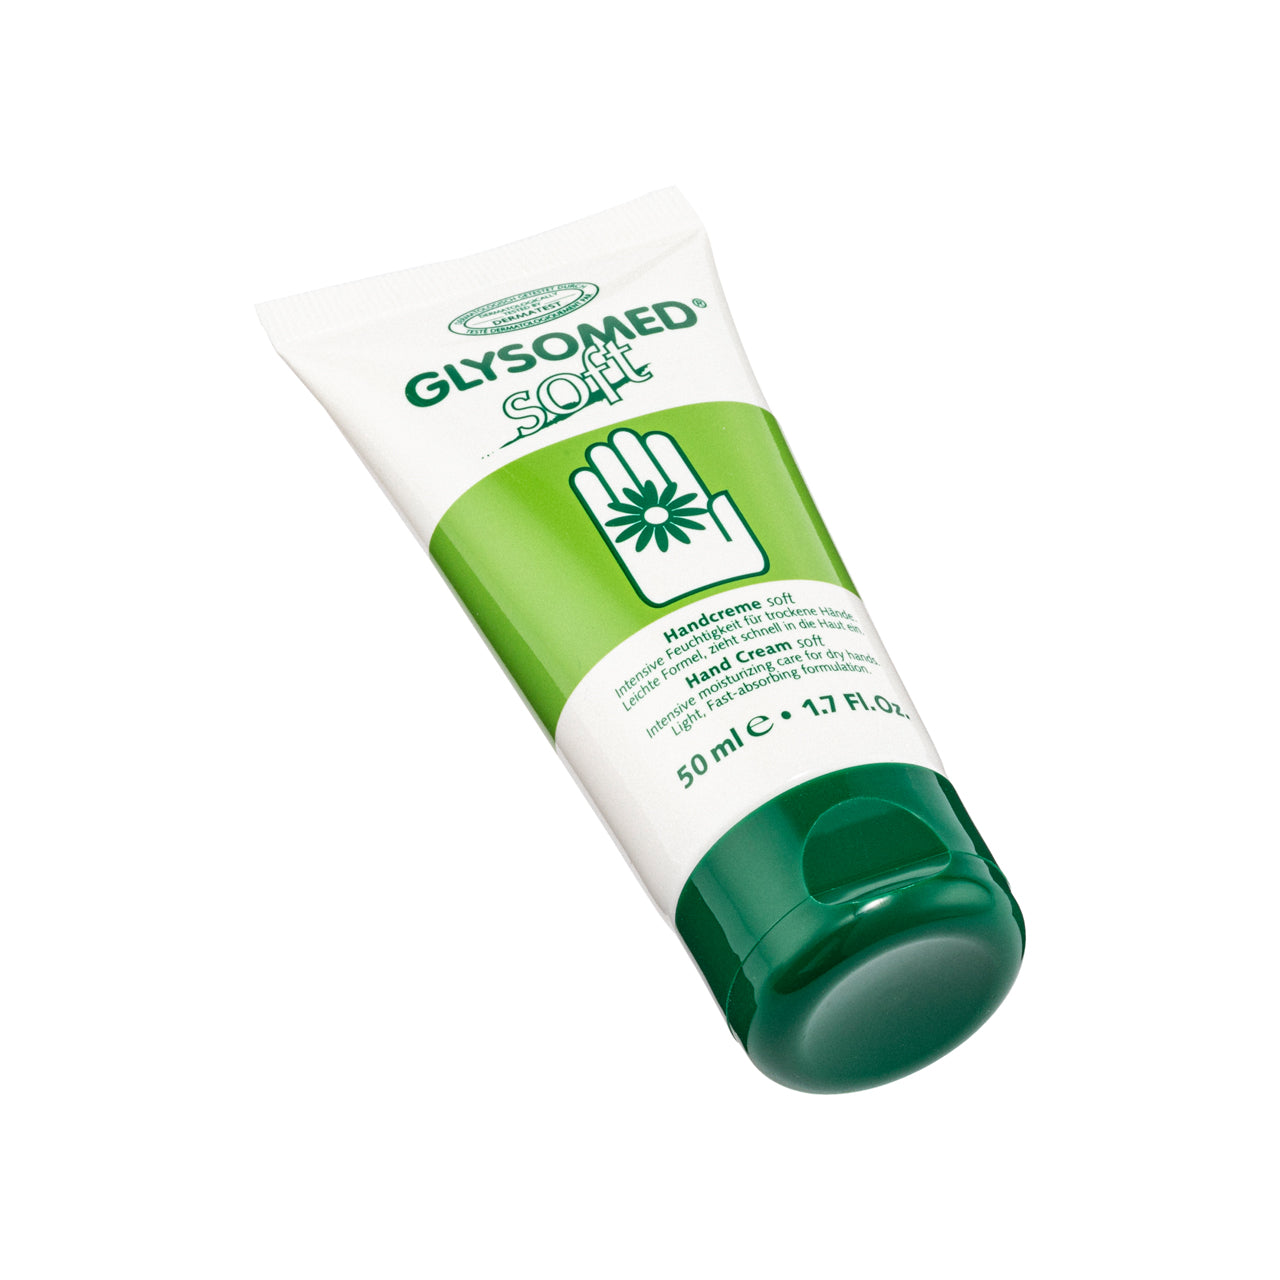 Glysomed Hand Cream Soft 50ML | Sasa Global eShop